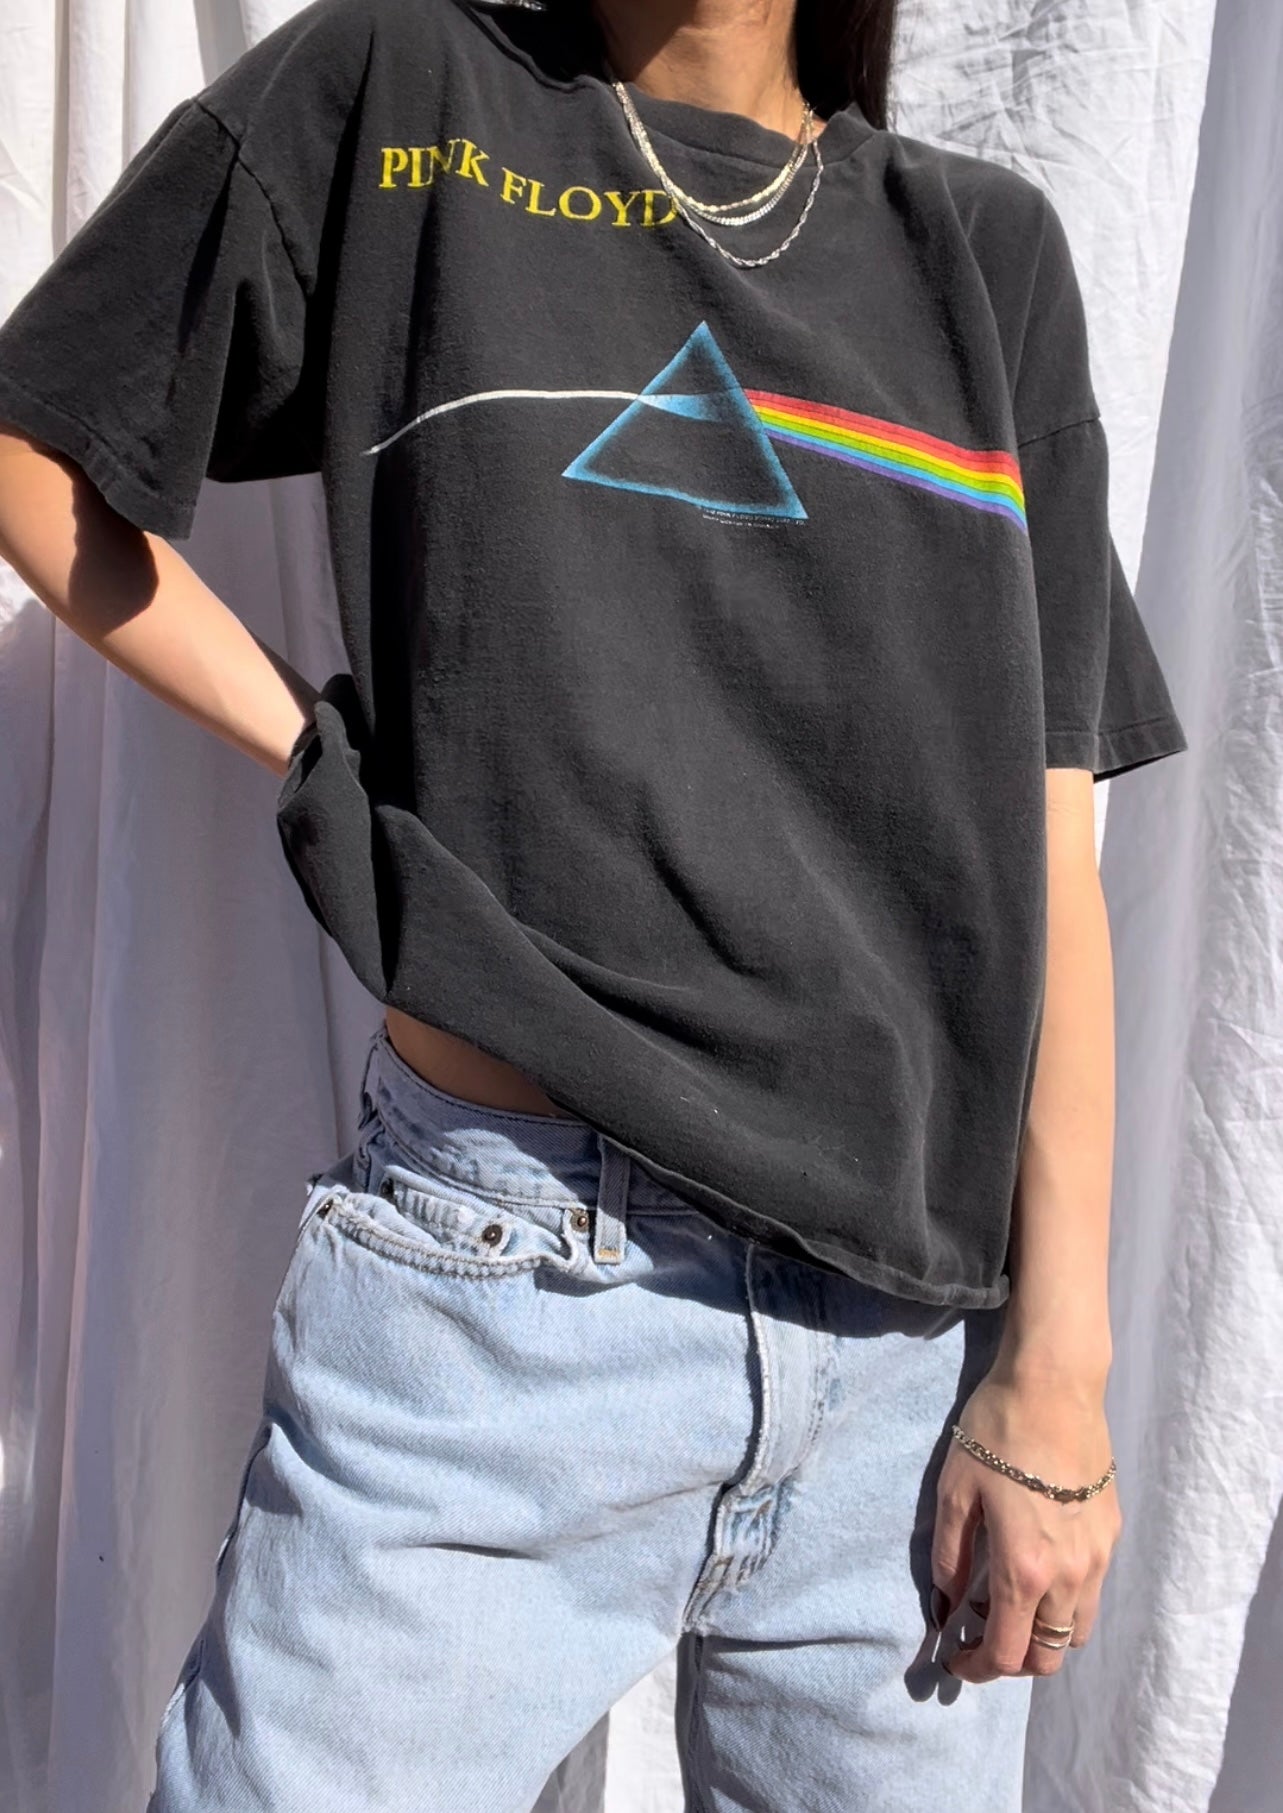 1994 Vintage Pink Floyd Tee